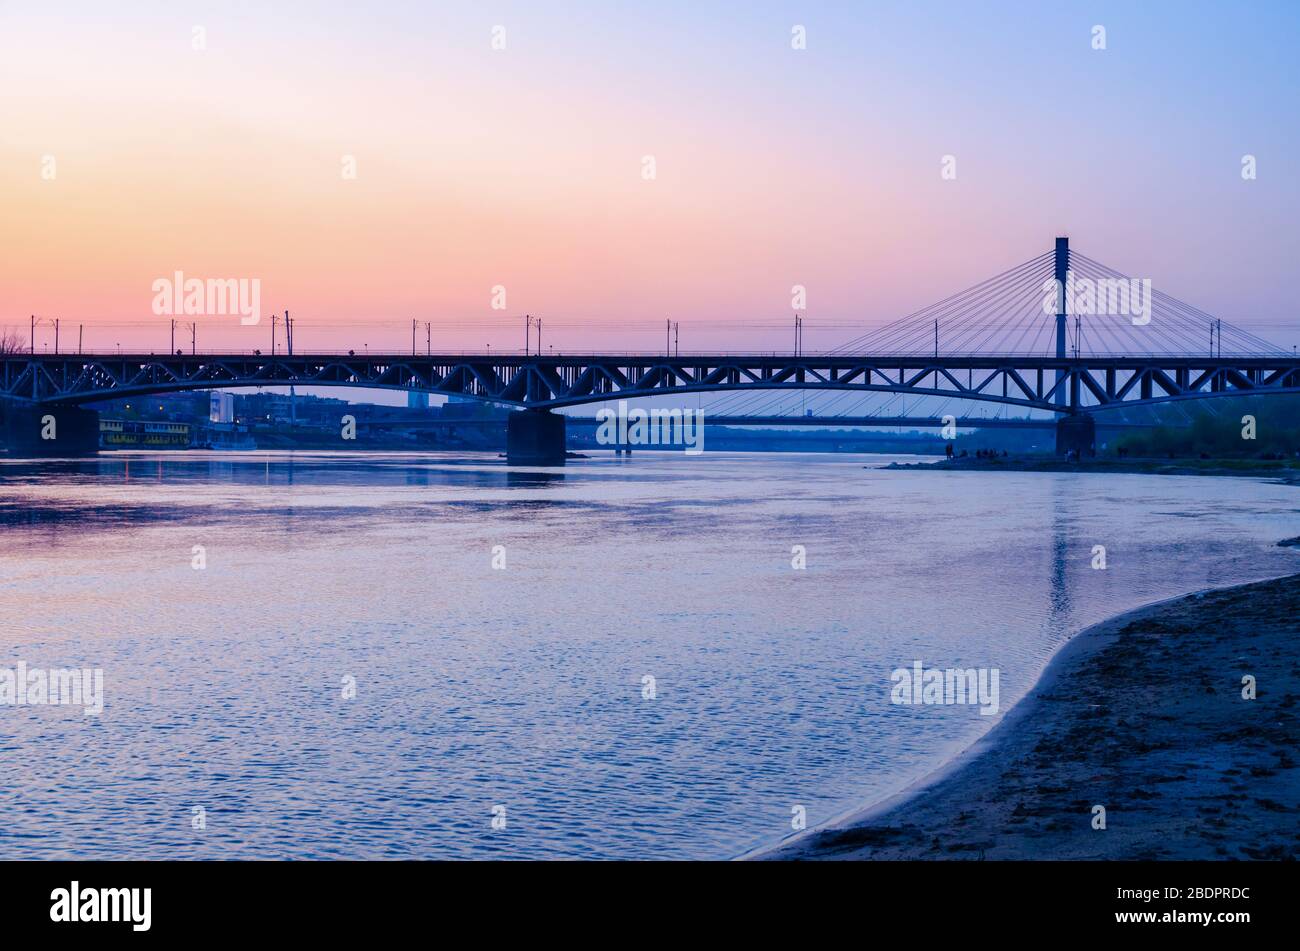 Warsaw Swietokrzyski Bridge over Wisla River at dusk. Stock Photo